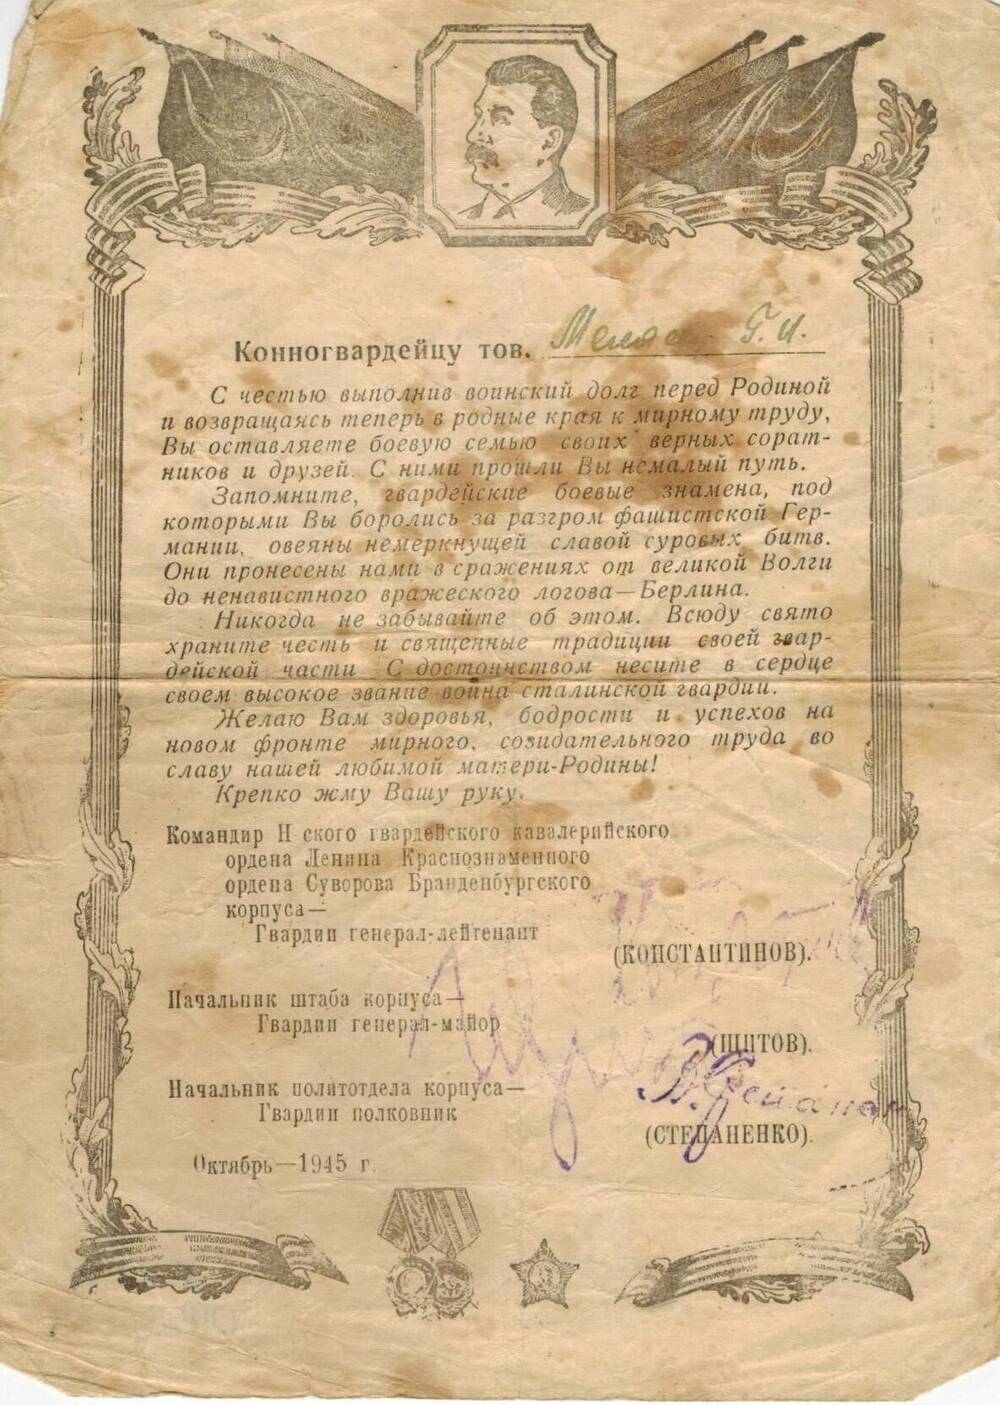 Благодарность Невского гв.кавалерийского ордена Ленина Краснознаменного ордена суворова Бранденбургского корпуса от октября 1945 года Миляеву Г.И.